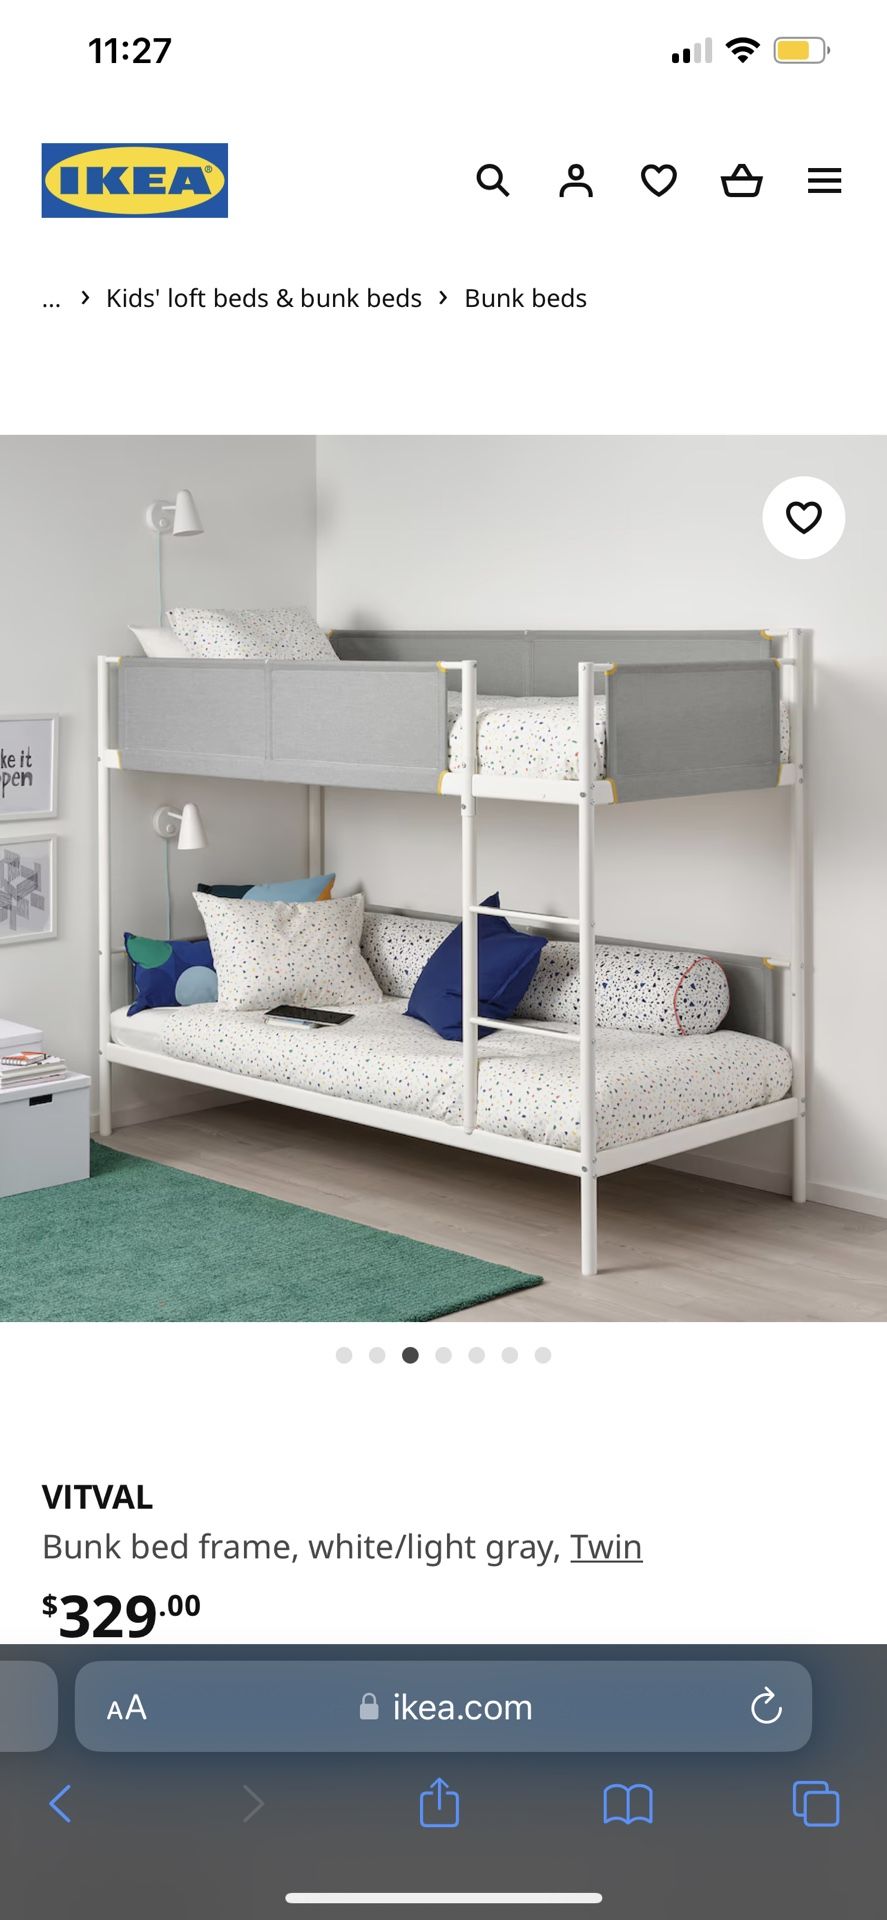 IKEA Bunk Beds 